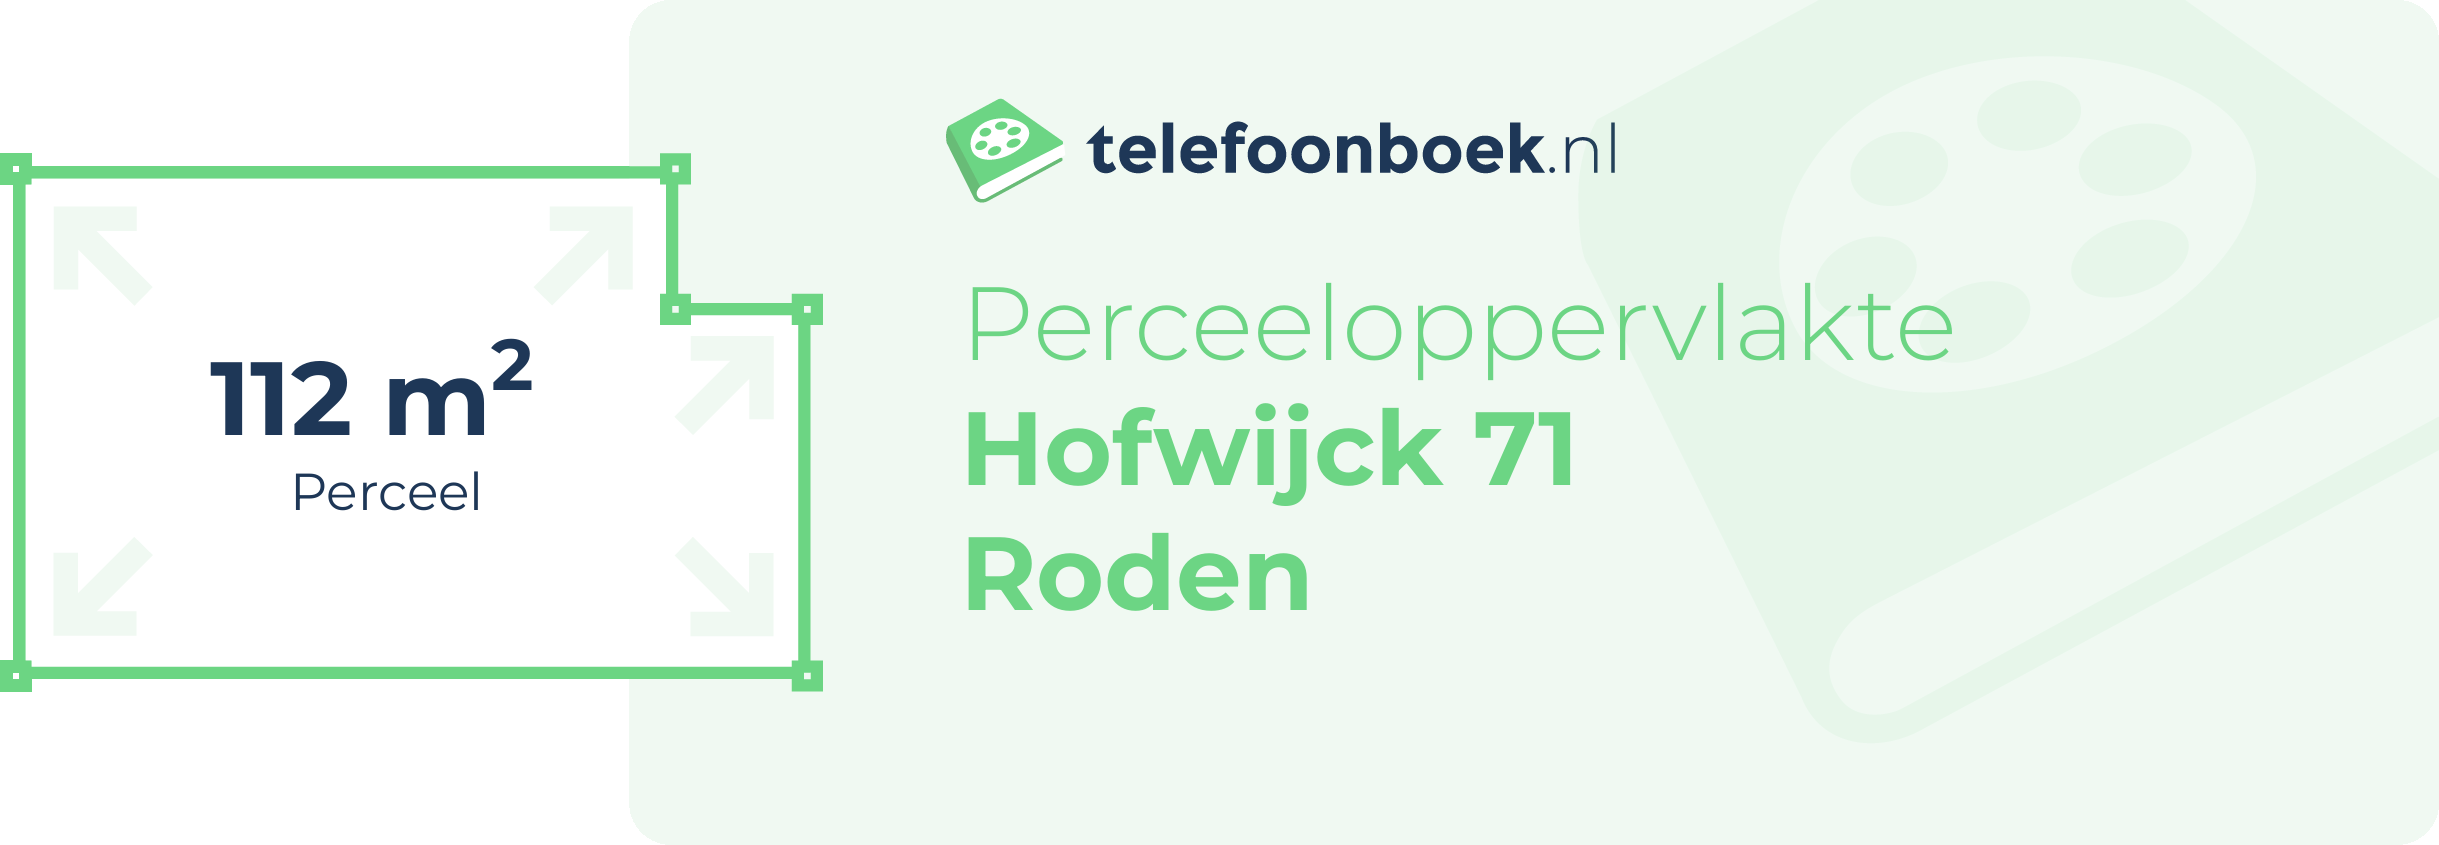 Perceeloppervlakte Hofwijck 71 Roden